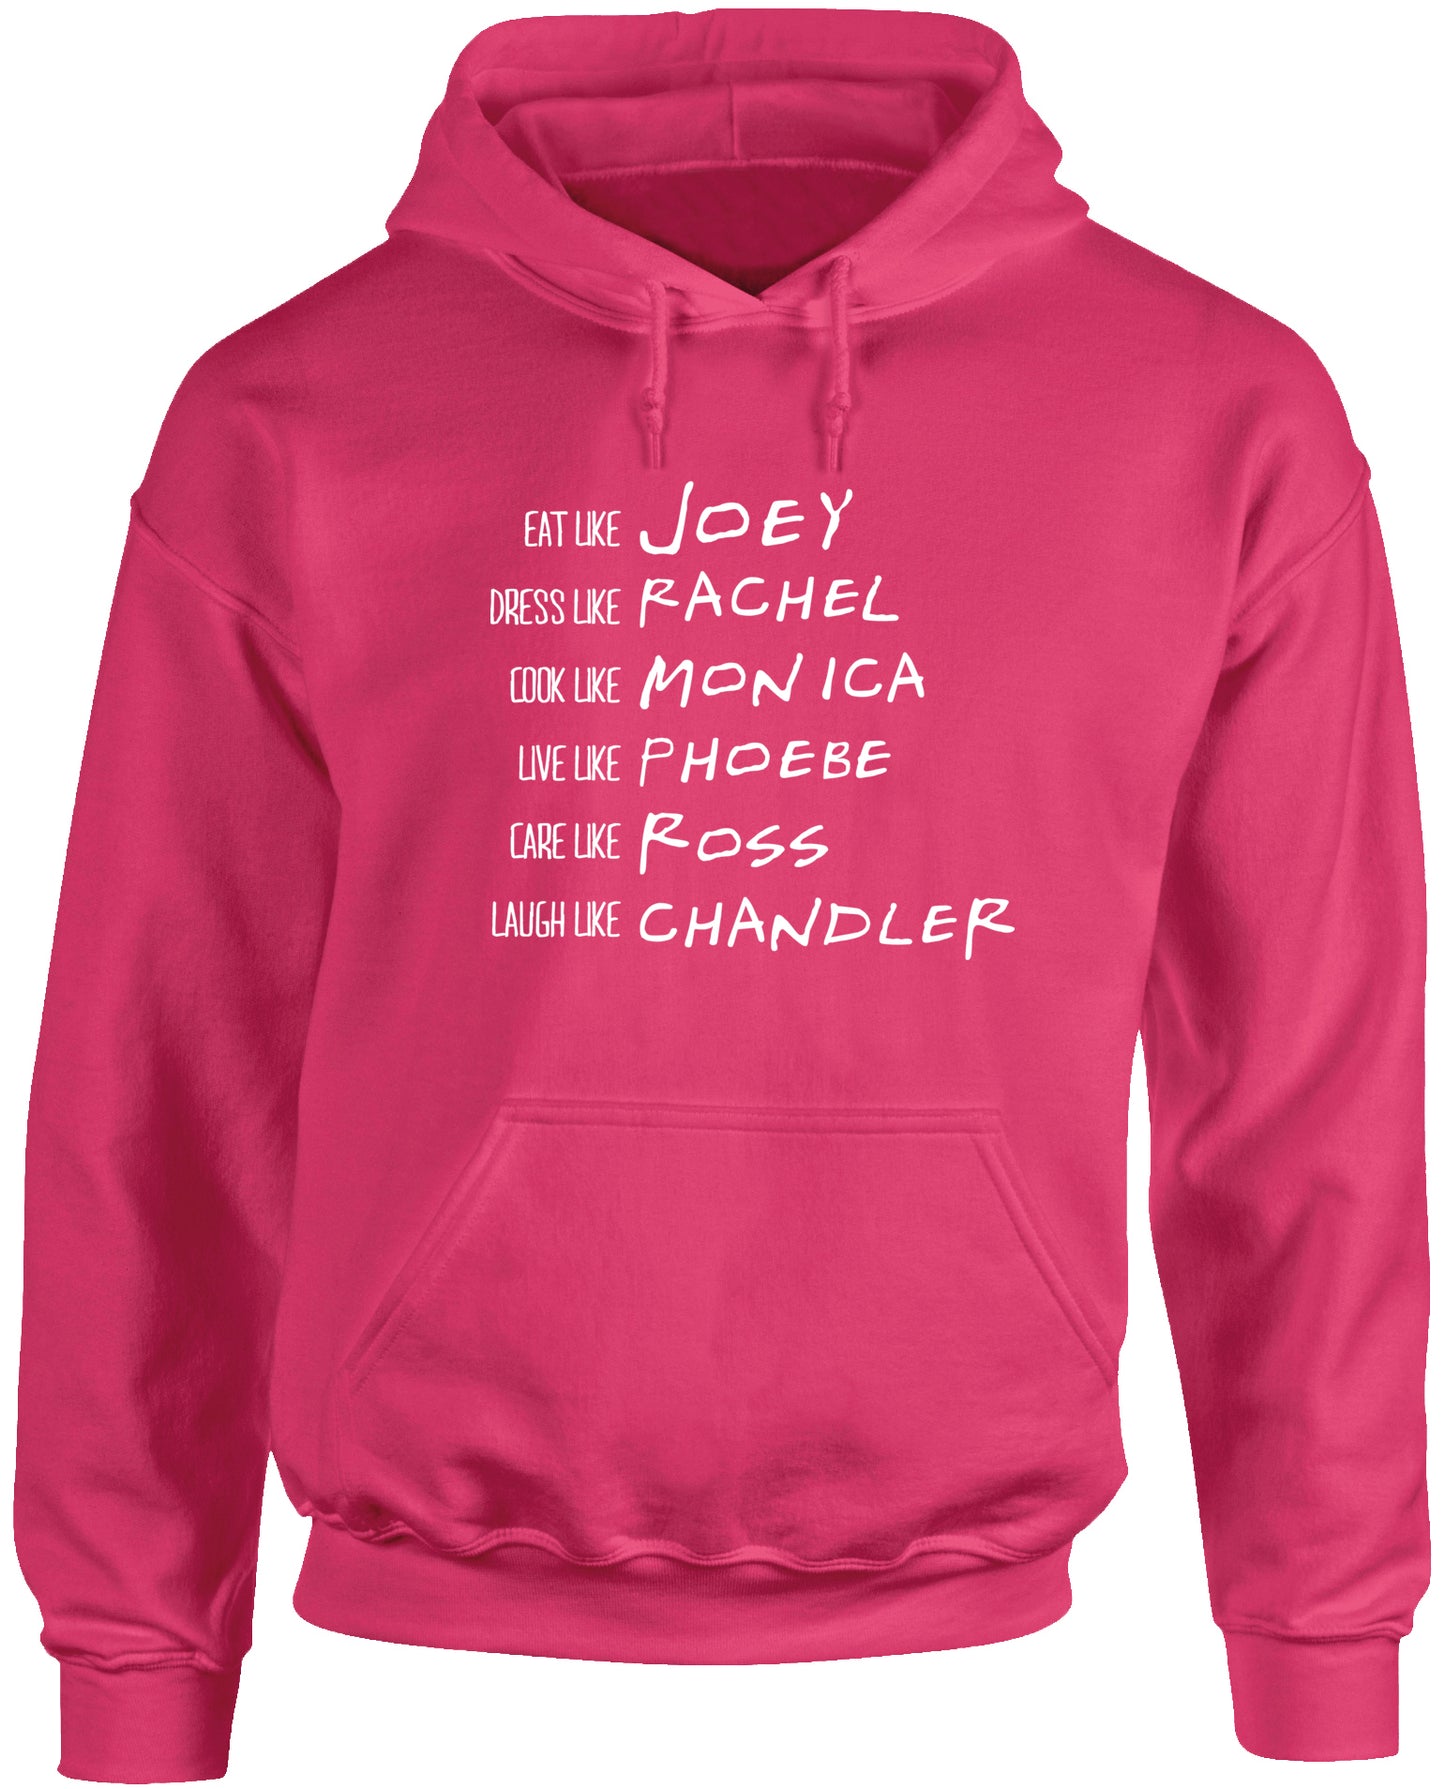 Be like Rachel Monica Phoebe Joey Chandler Ross unisex Hoodie hooded top